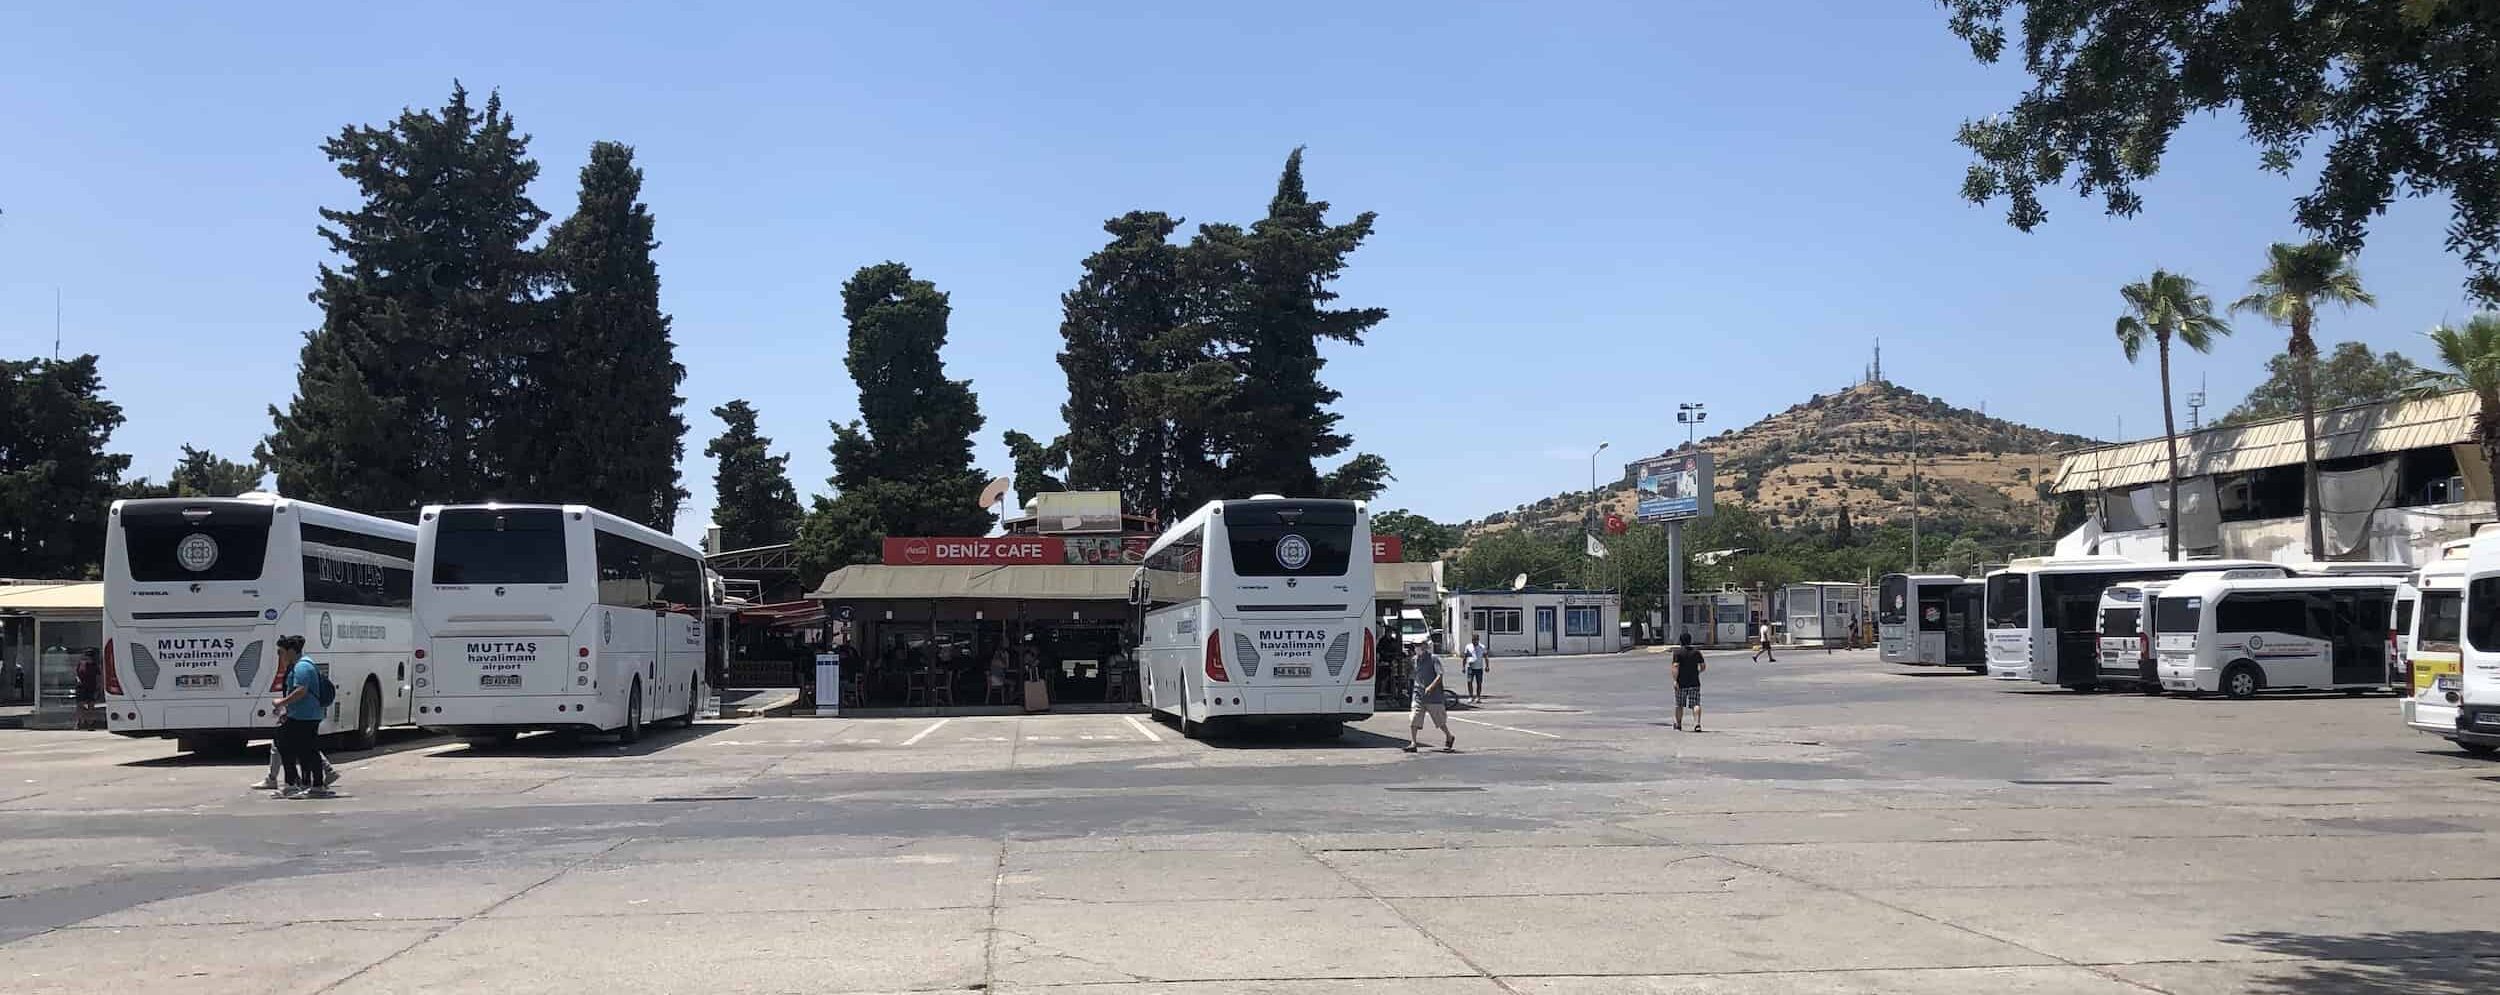 Old bus terminal in Bodrum, Turkey